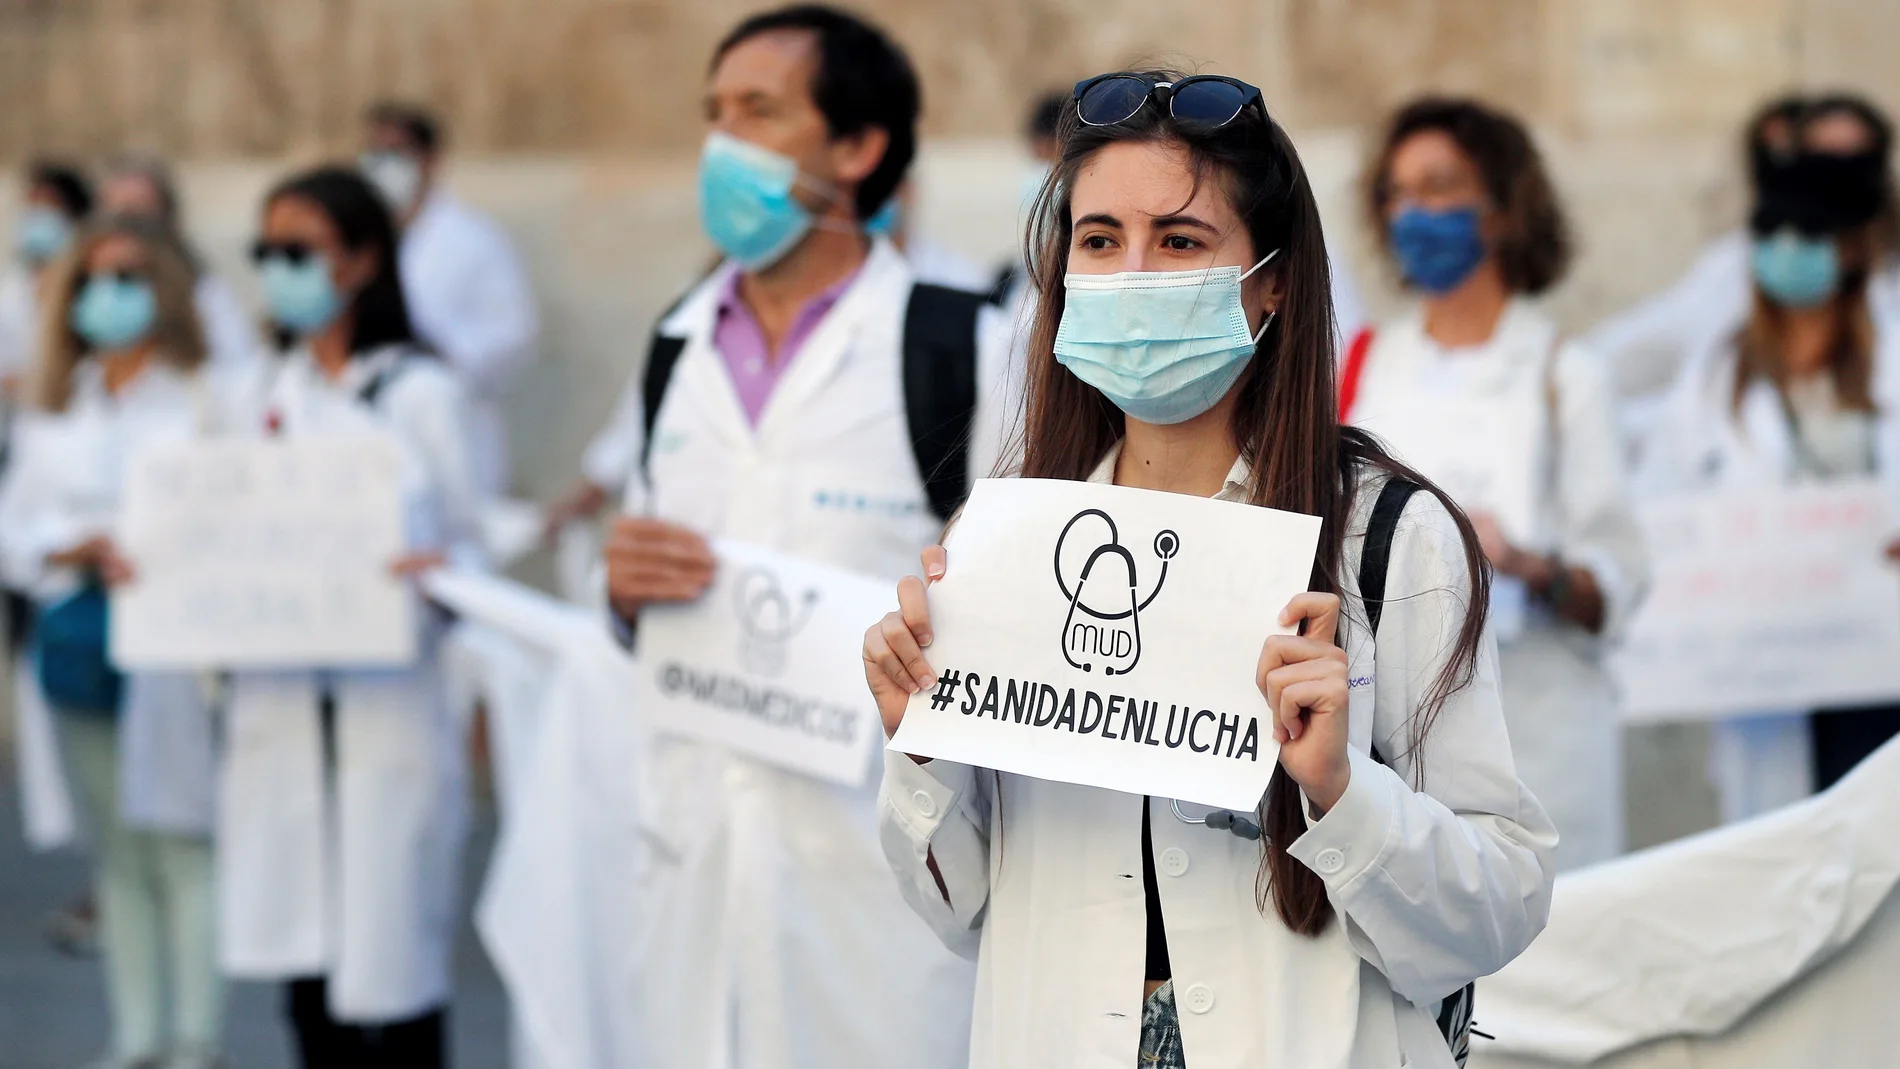 Los médicos valencianos se unen a decir "basta" a la mala gestión en sanidad